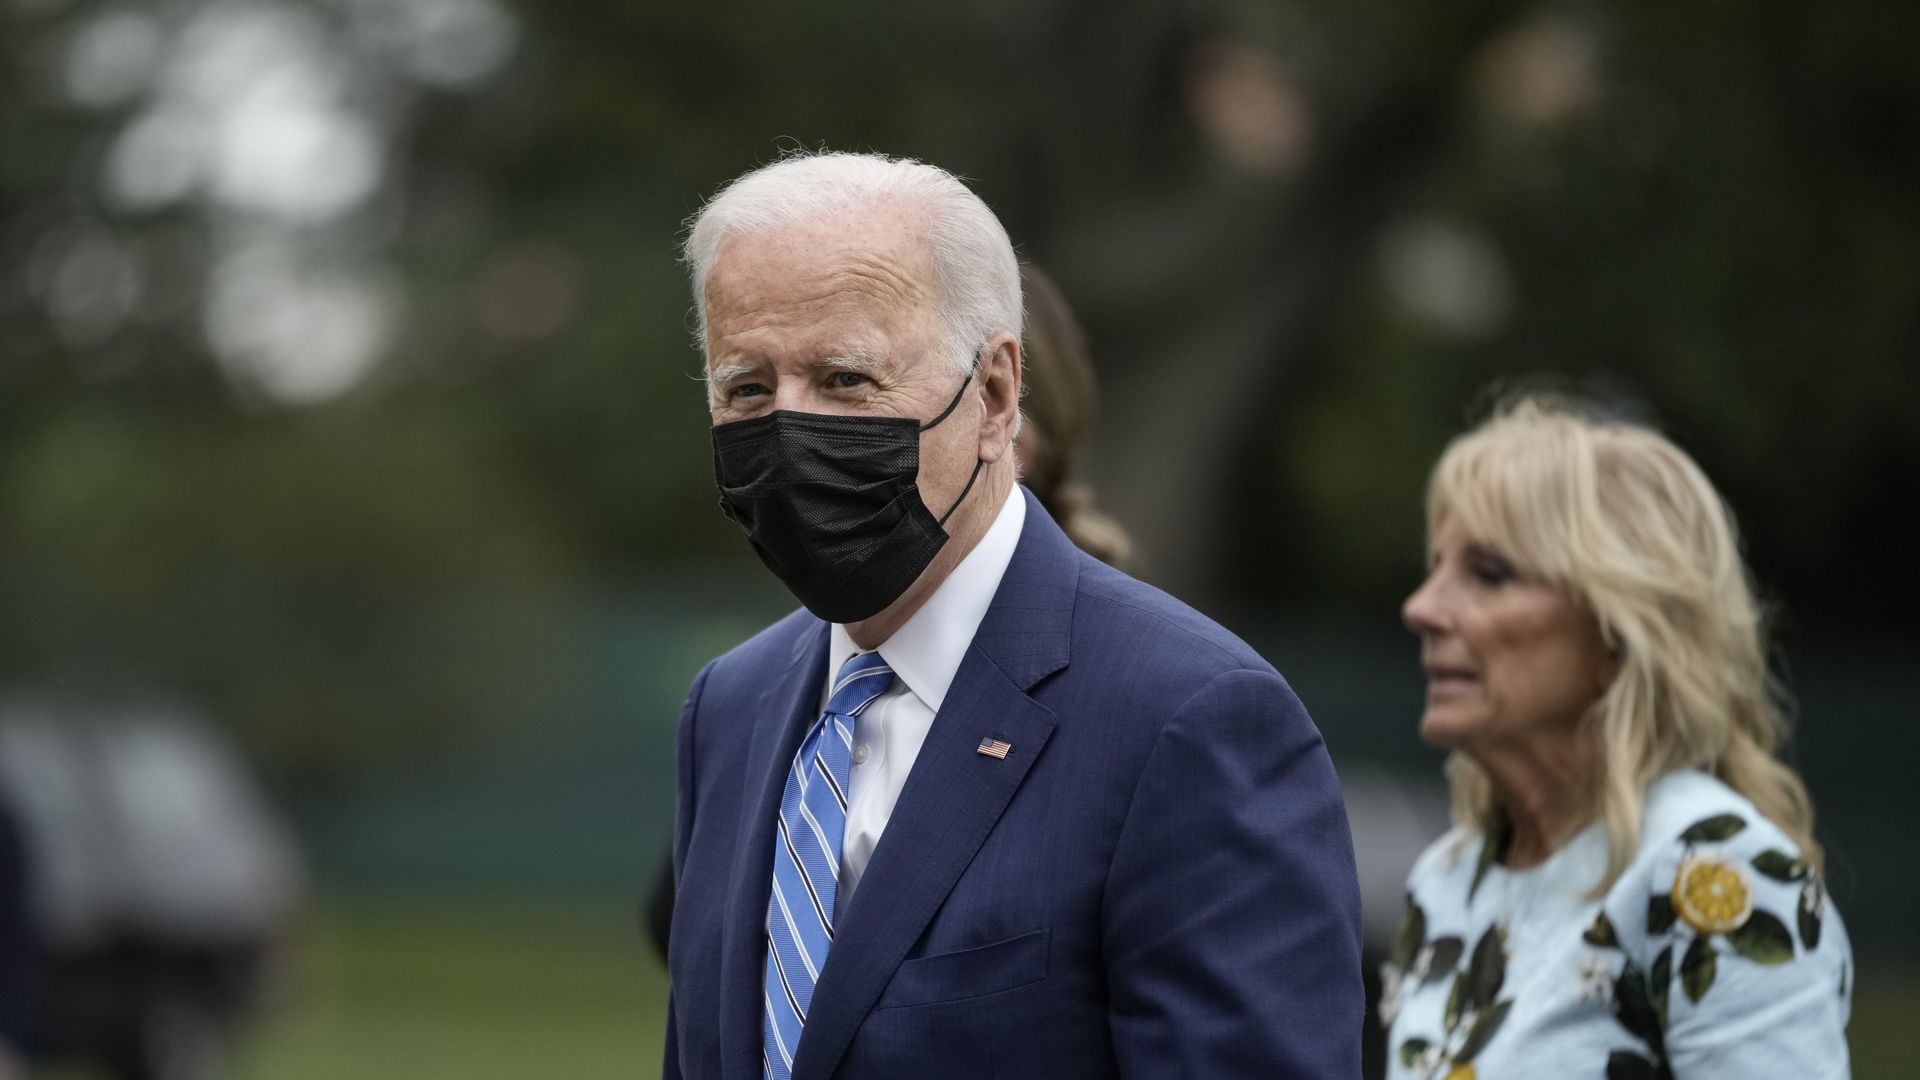 Photo of Joe Biden wearing a mask walking on the White House lawn with Jill Biden